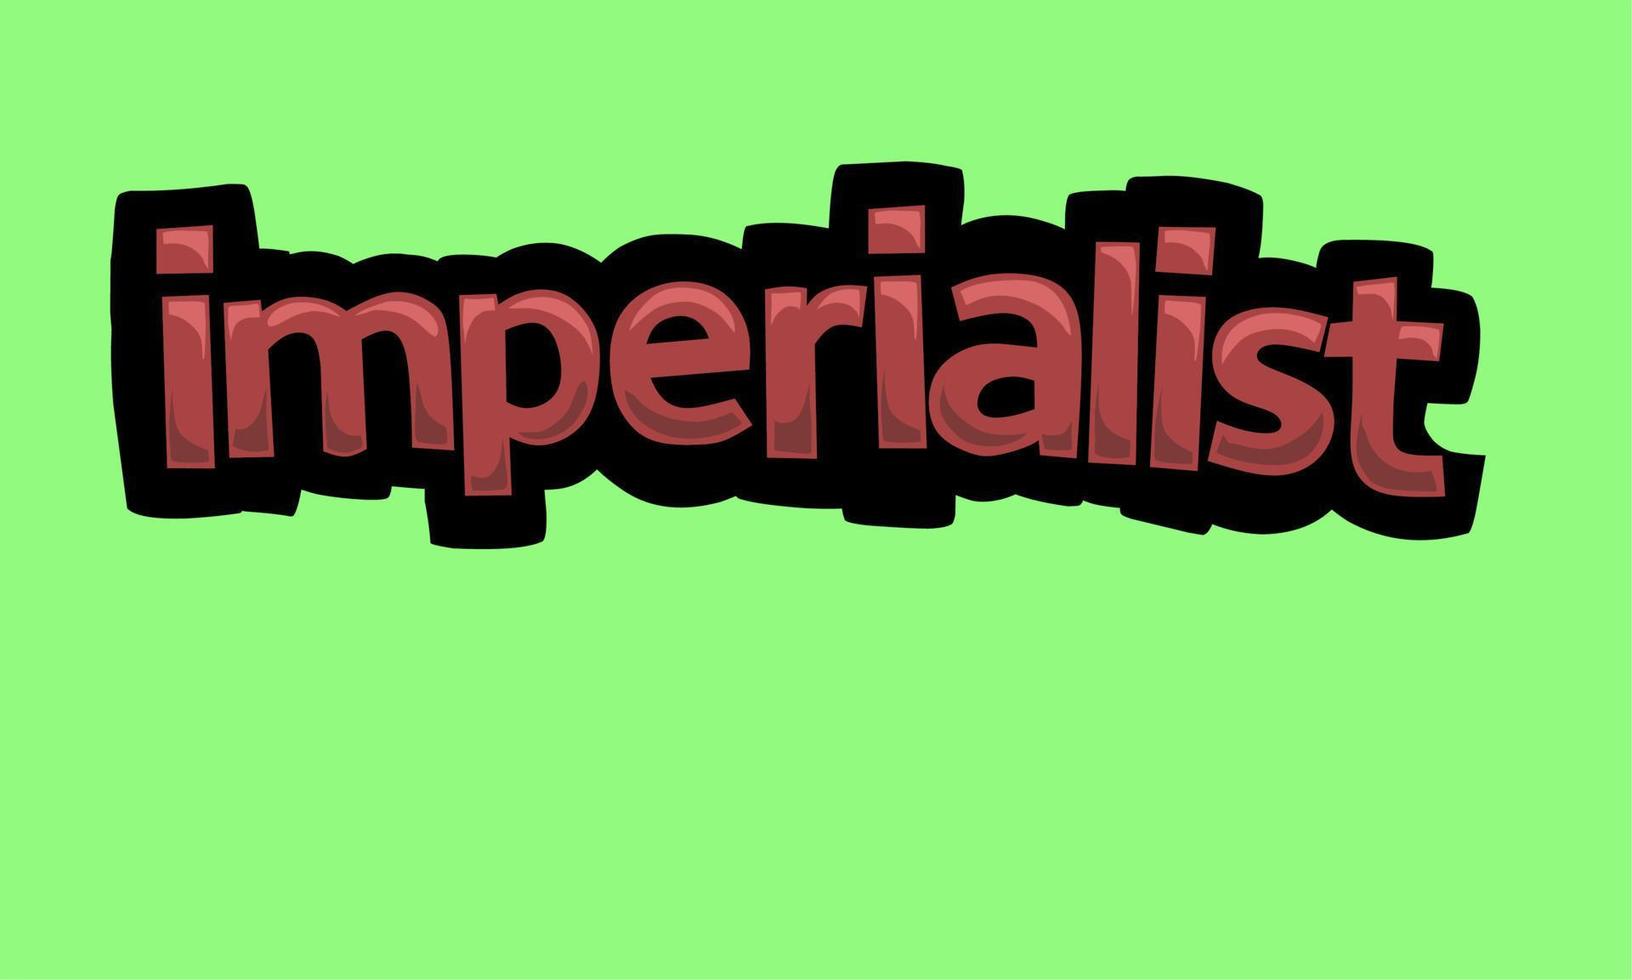 diseño vectorial de escritura imperialista sobre un fondo verde vector